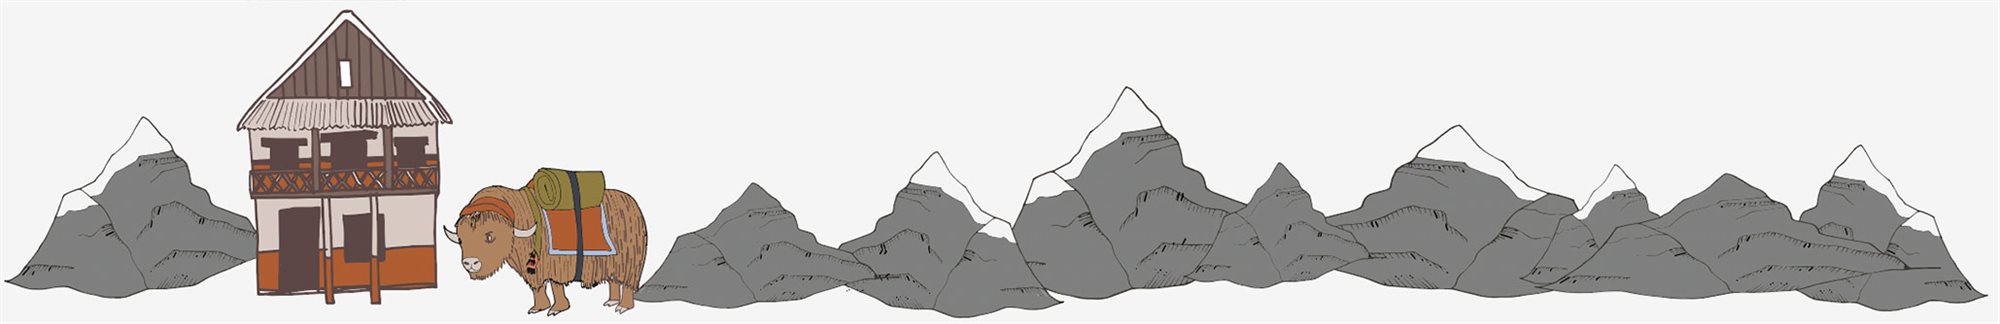 Tegning af bjerge, et hus og en okse